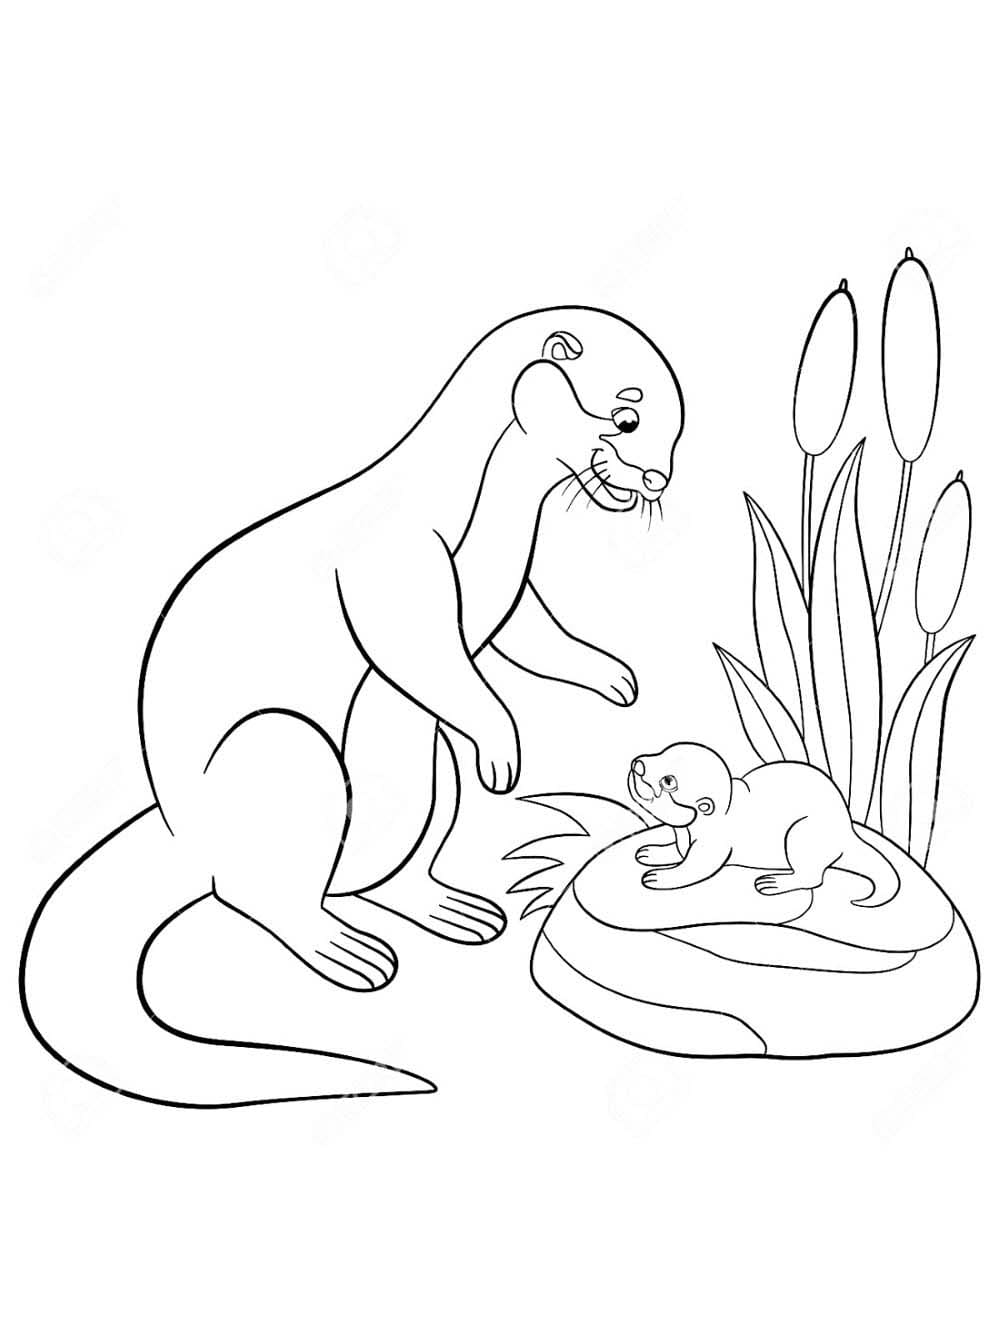 무료 두 마리 수달 이미지 coloring page